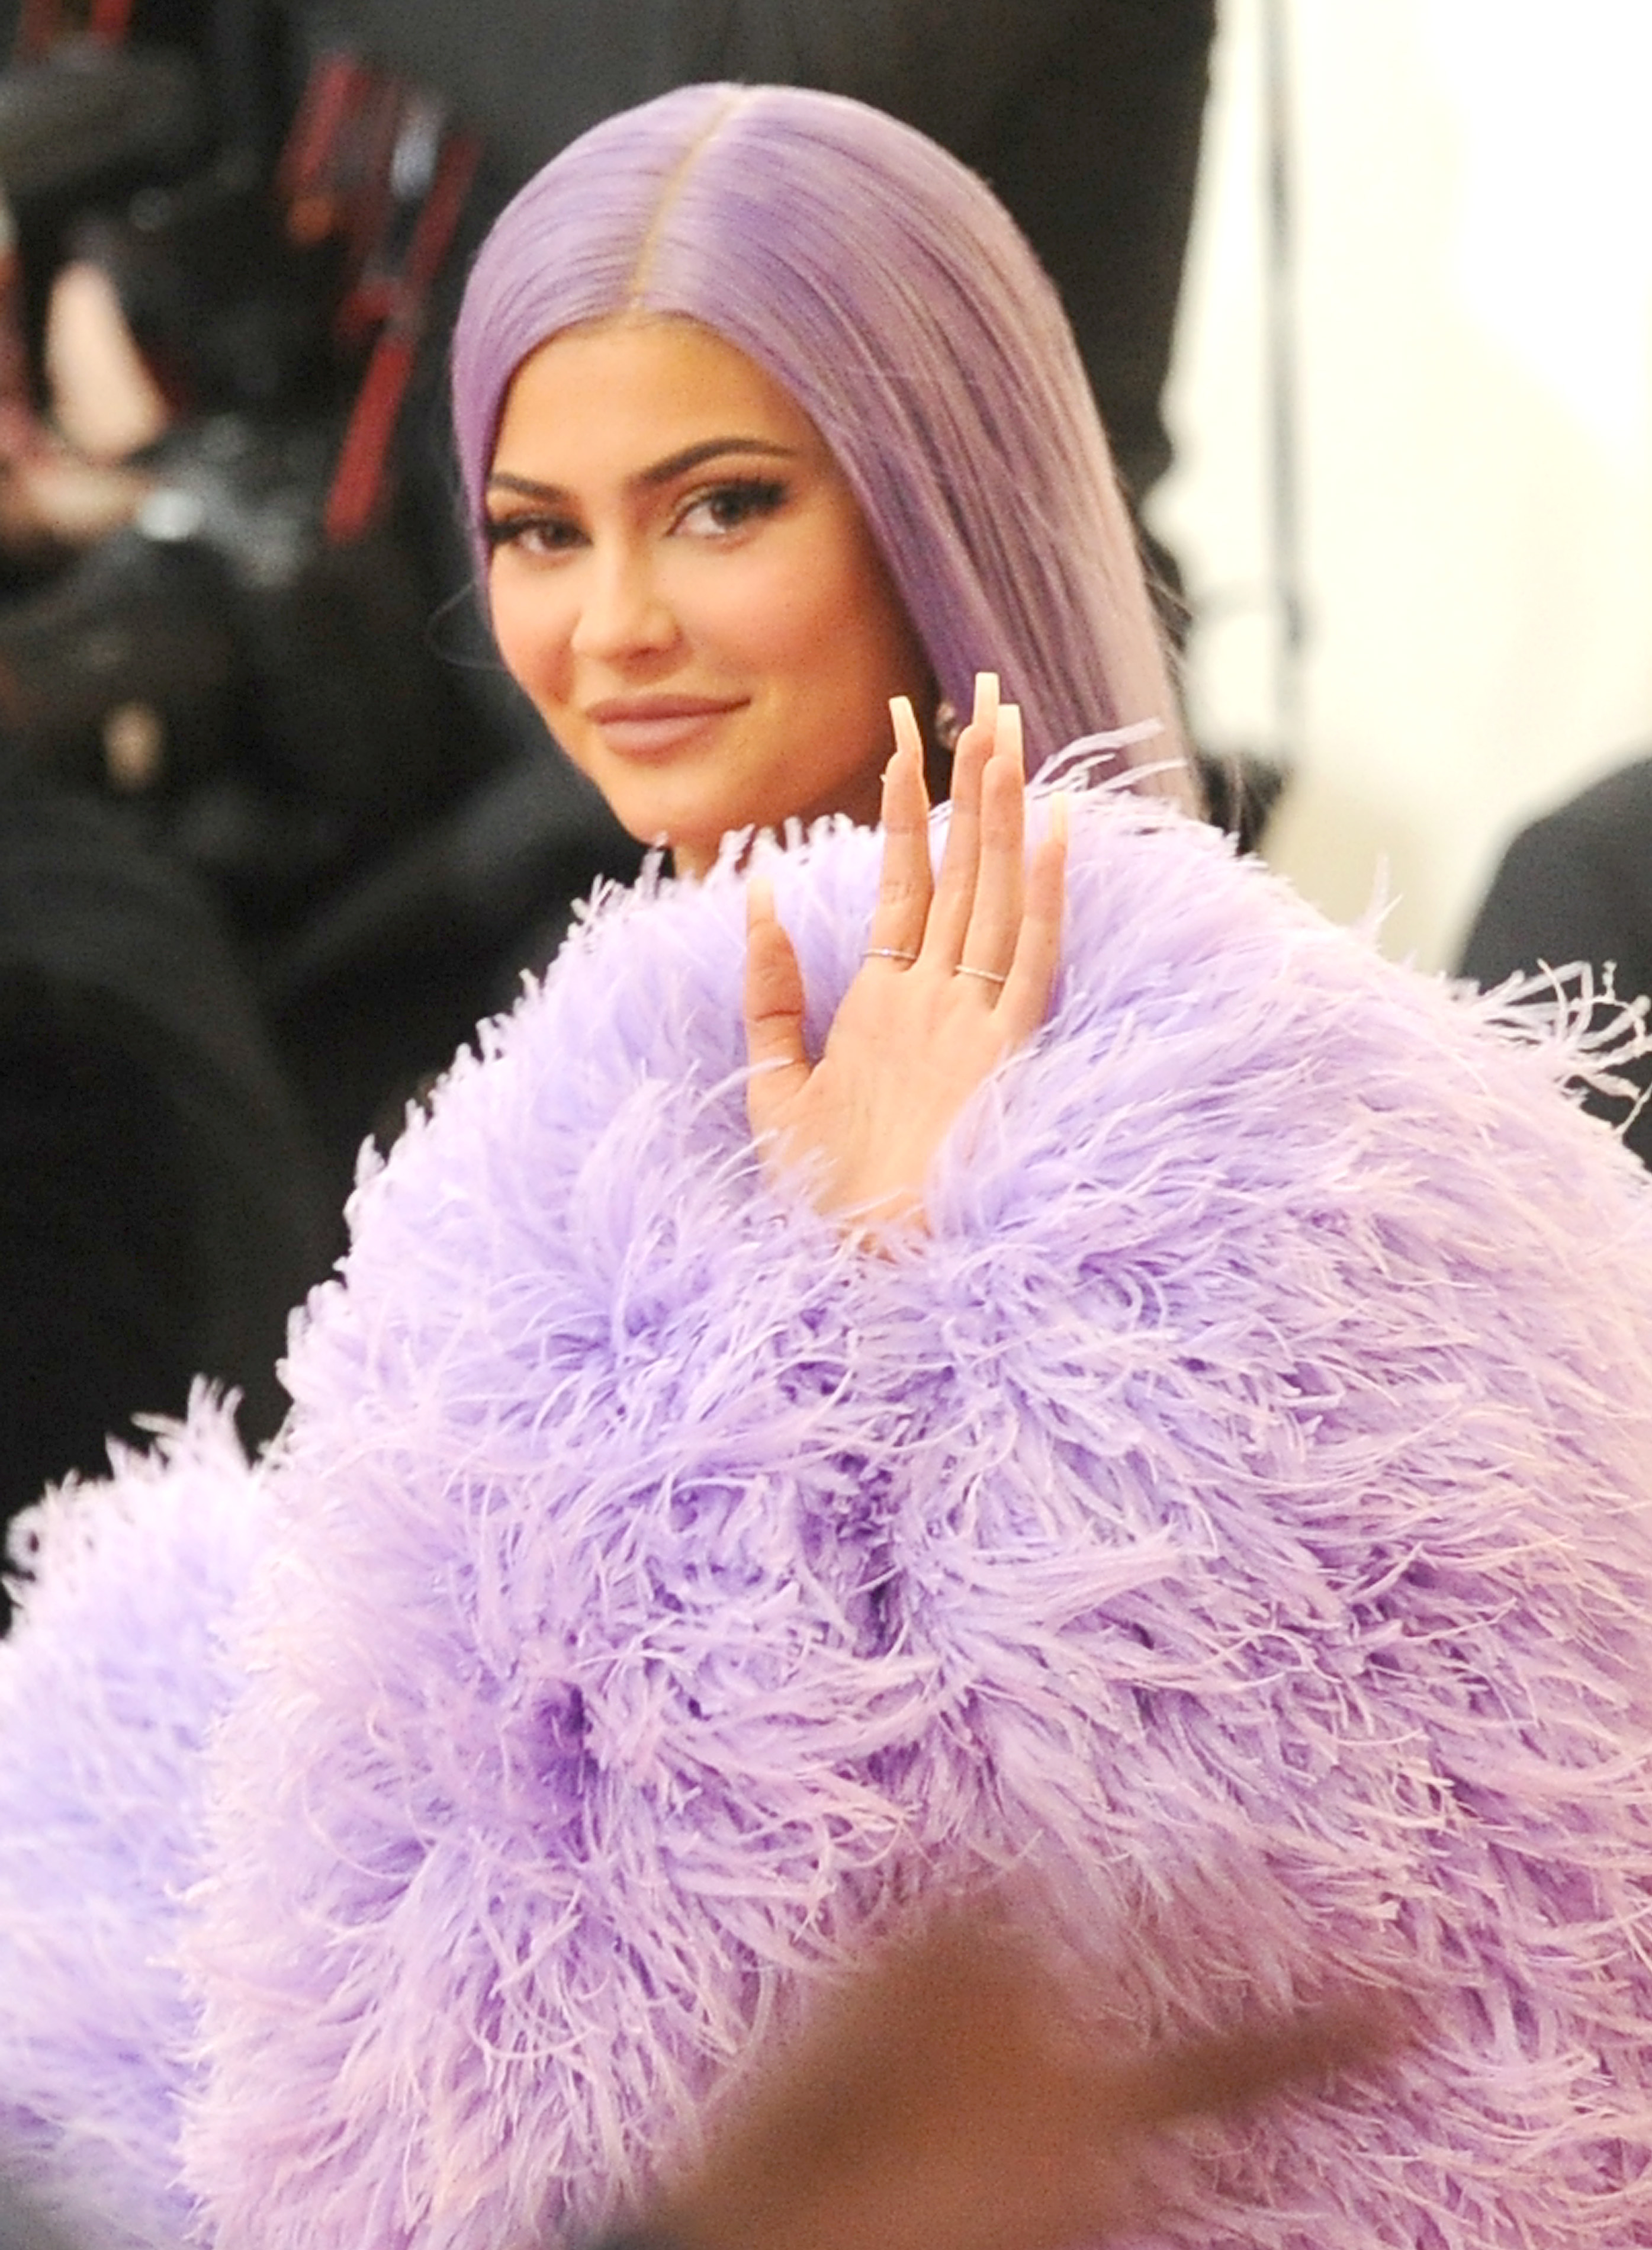 Η Kylie Jenner έχει το απόλυτο χρώμα του καλοκαιριού στα νύχια της στο τελευταίο εξώφυλλο της Vogue!